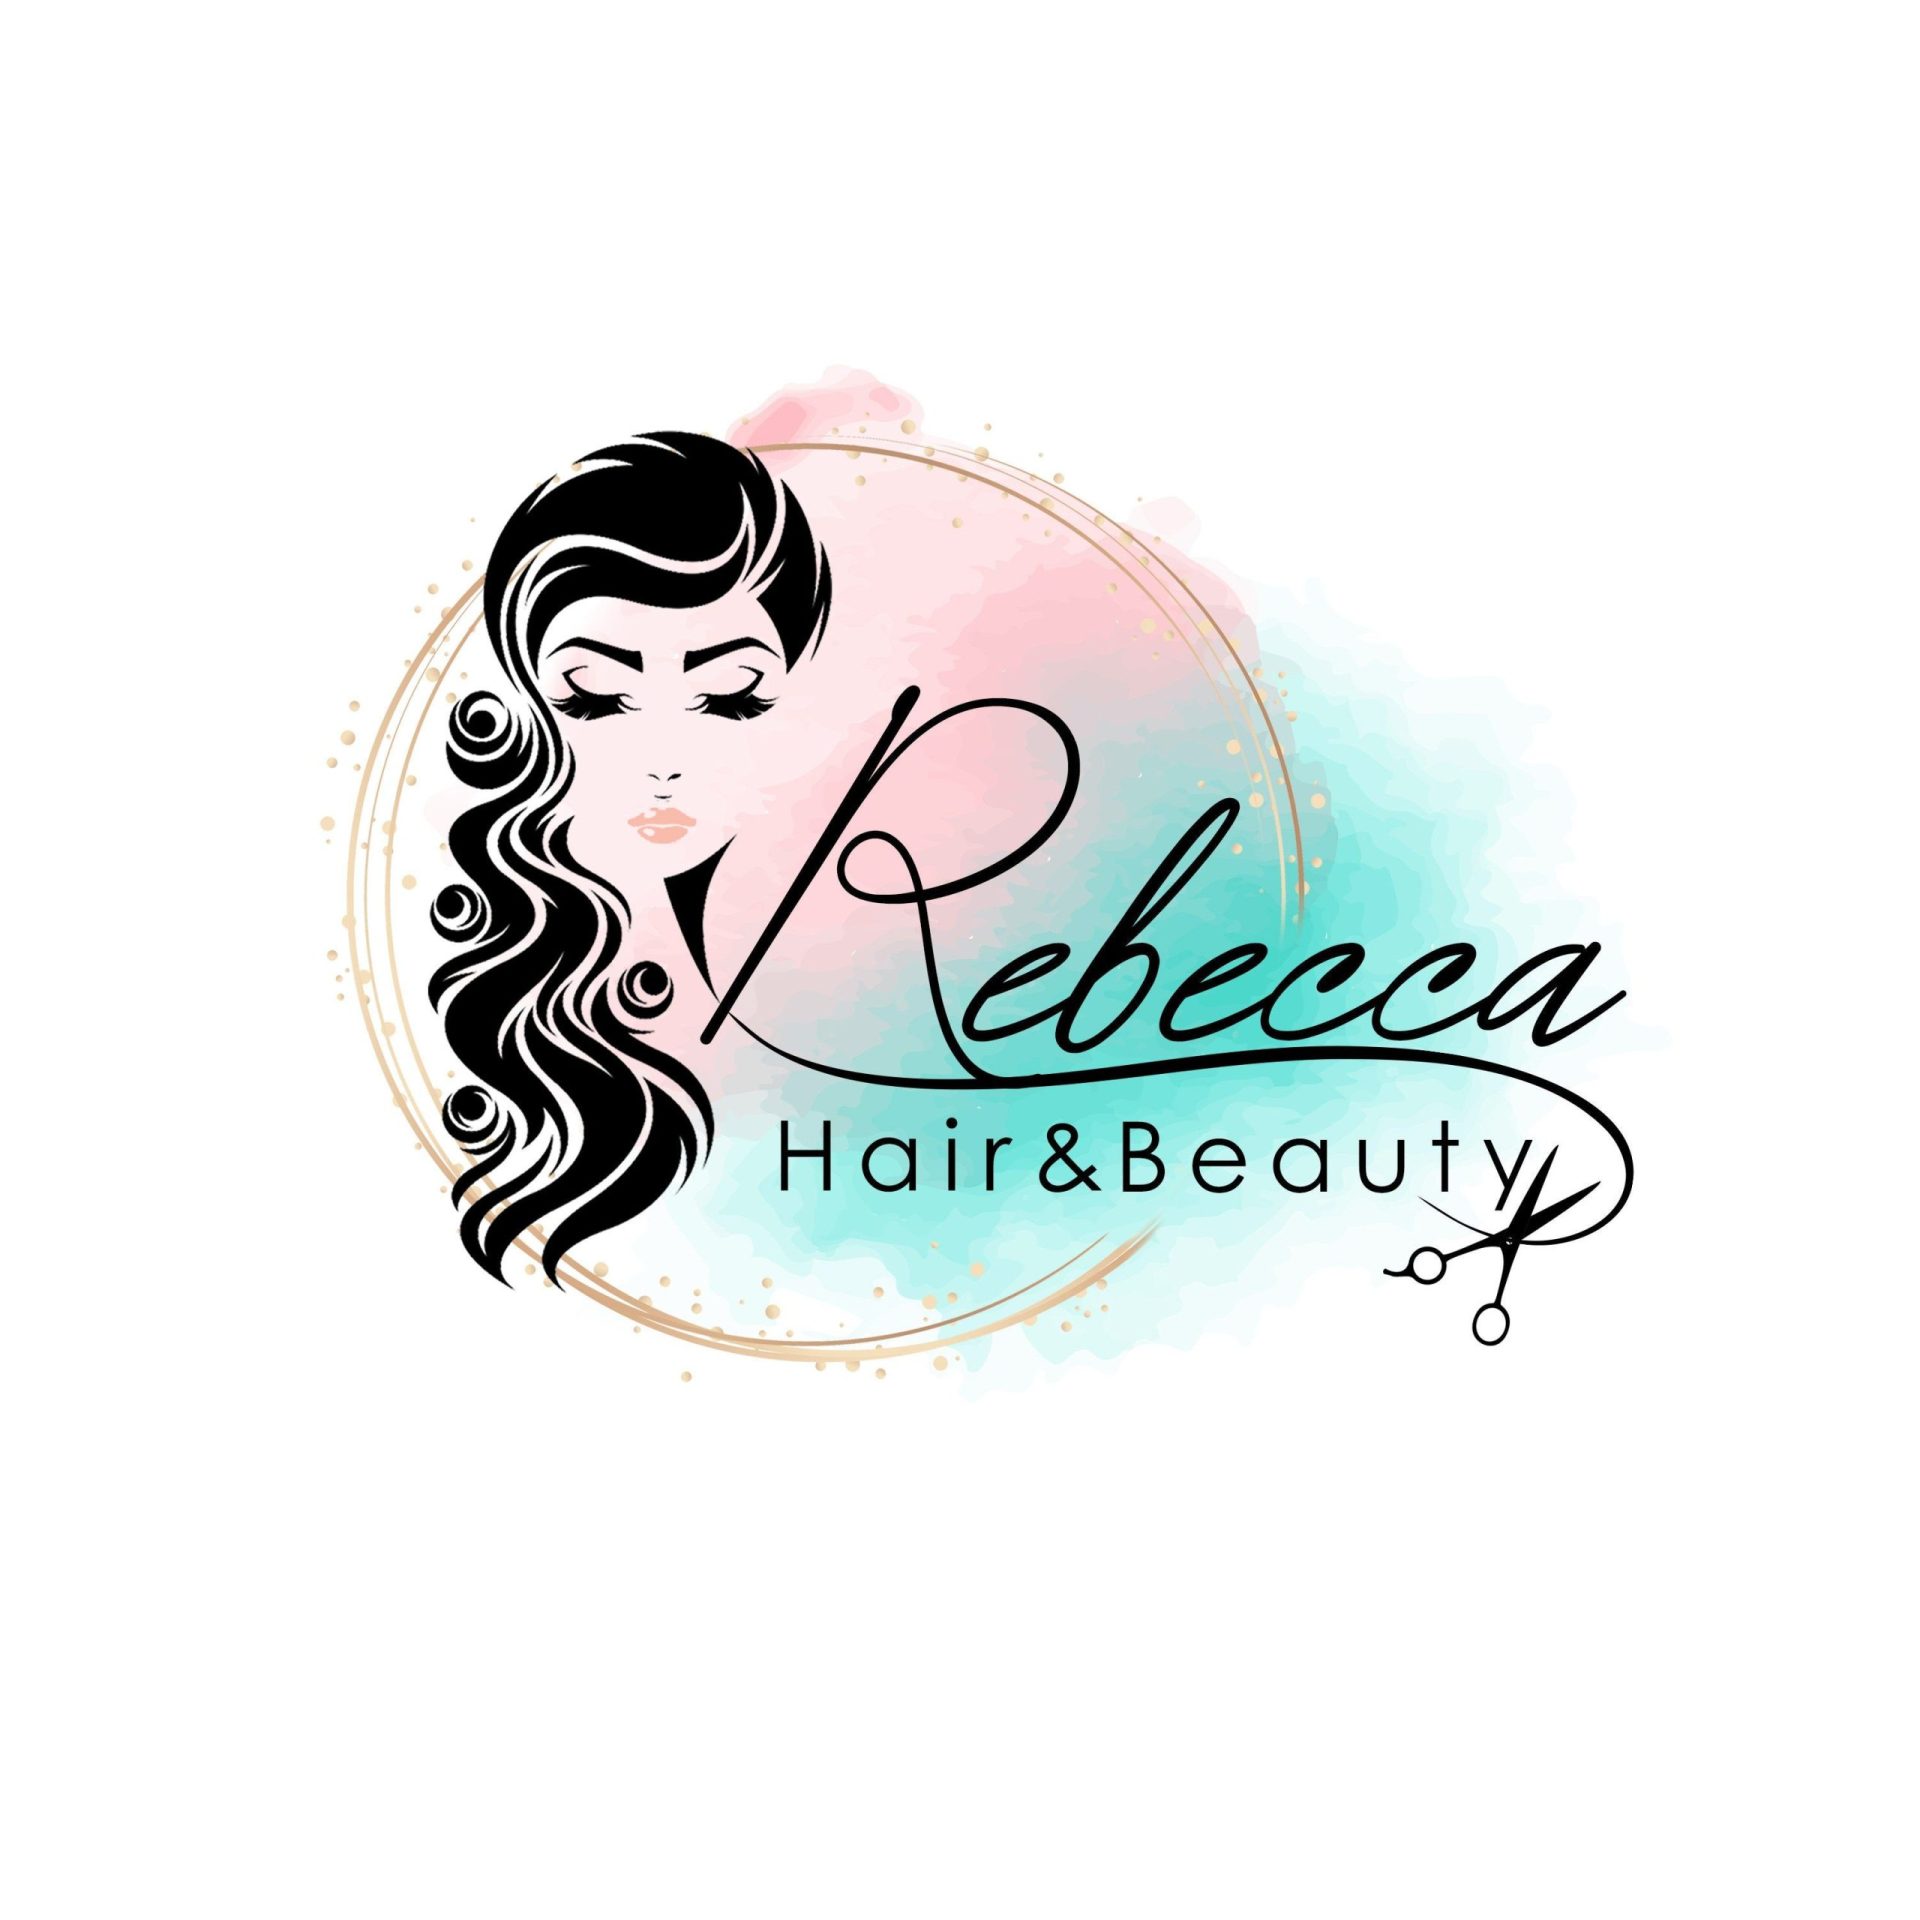 hairdresser logo ideas 1